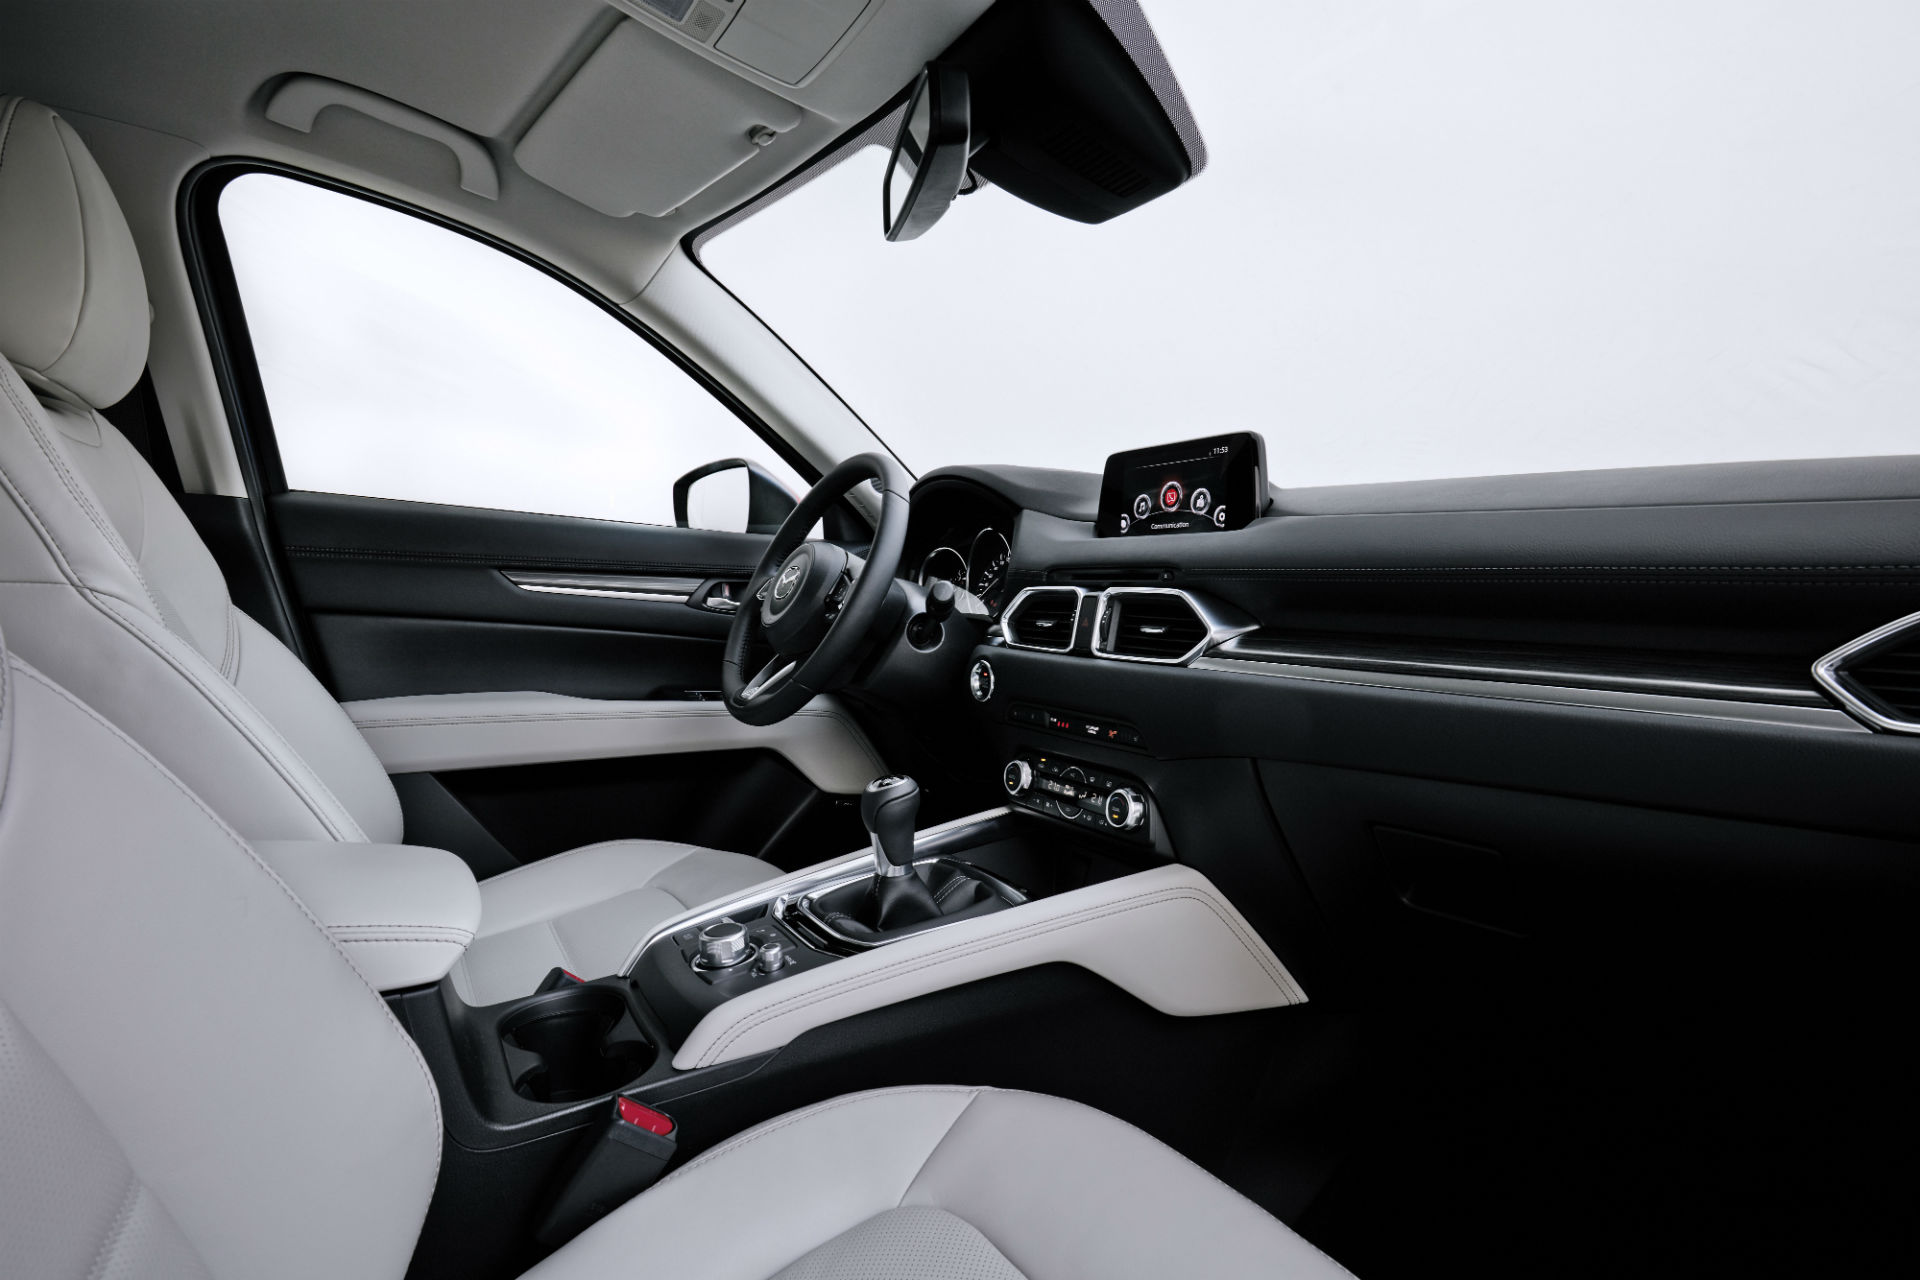 2017 Mazda CX-5 interior